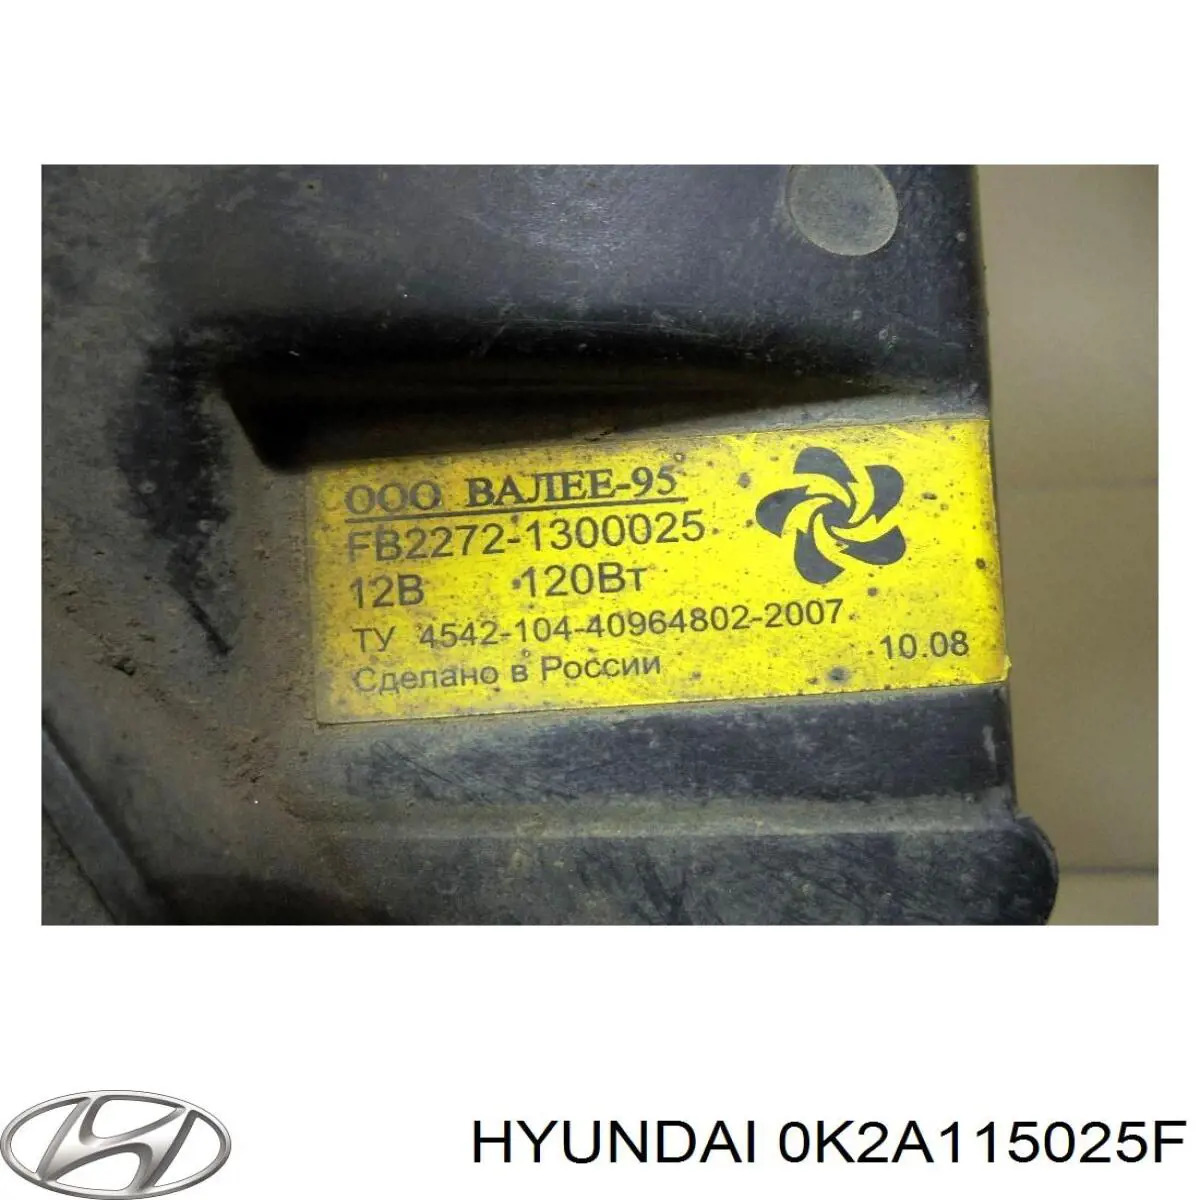 0K2A115025E Hyundai/Kia difusor de radiador, ventilador de refrigeración, condensador del aire acondicionado, completo con motor y rodete